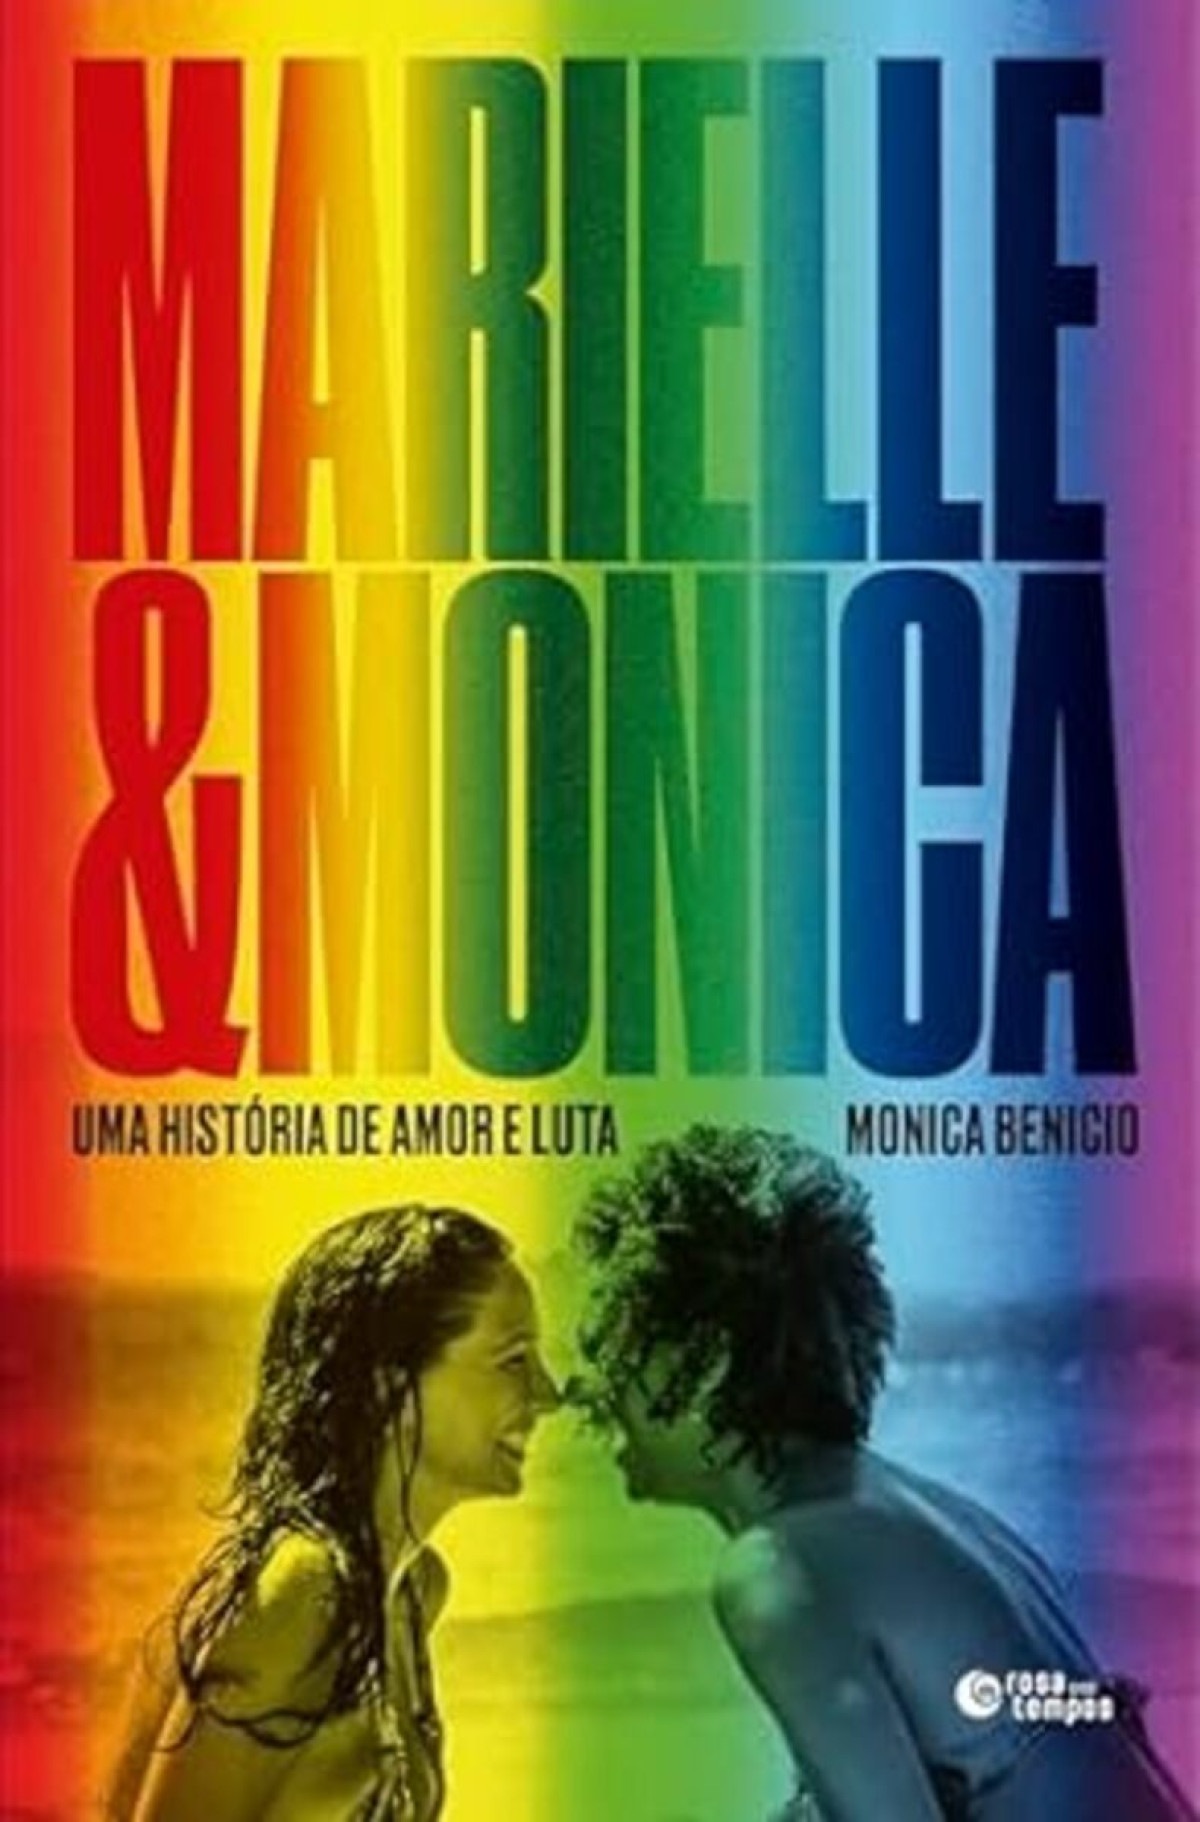 Marielle & Monica — Uma história de amor e luta De Monica Benicio. Rosa dos tempos, 240 páginas. R$ 59,90 